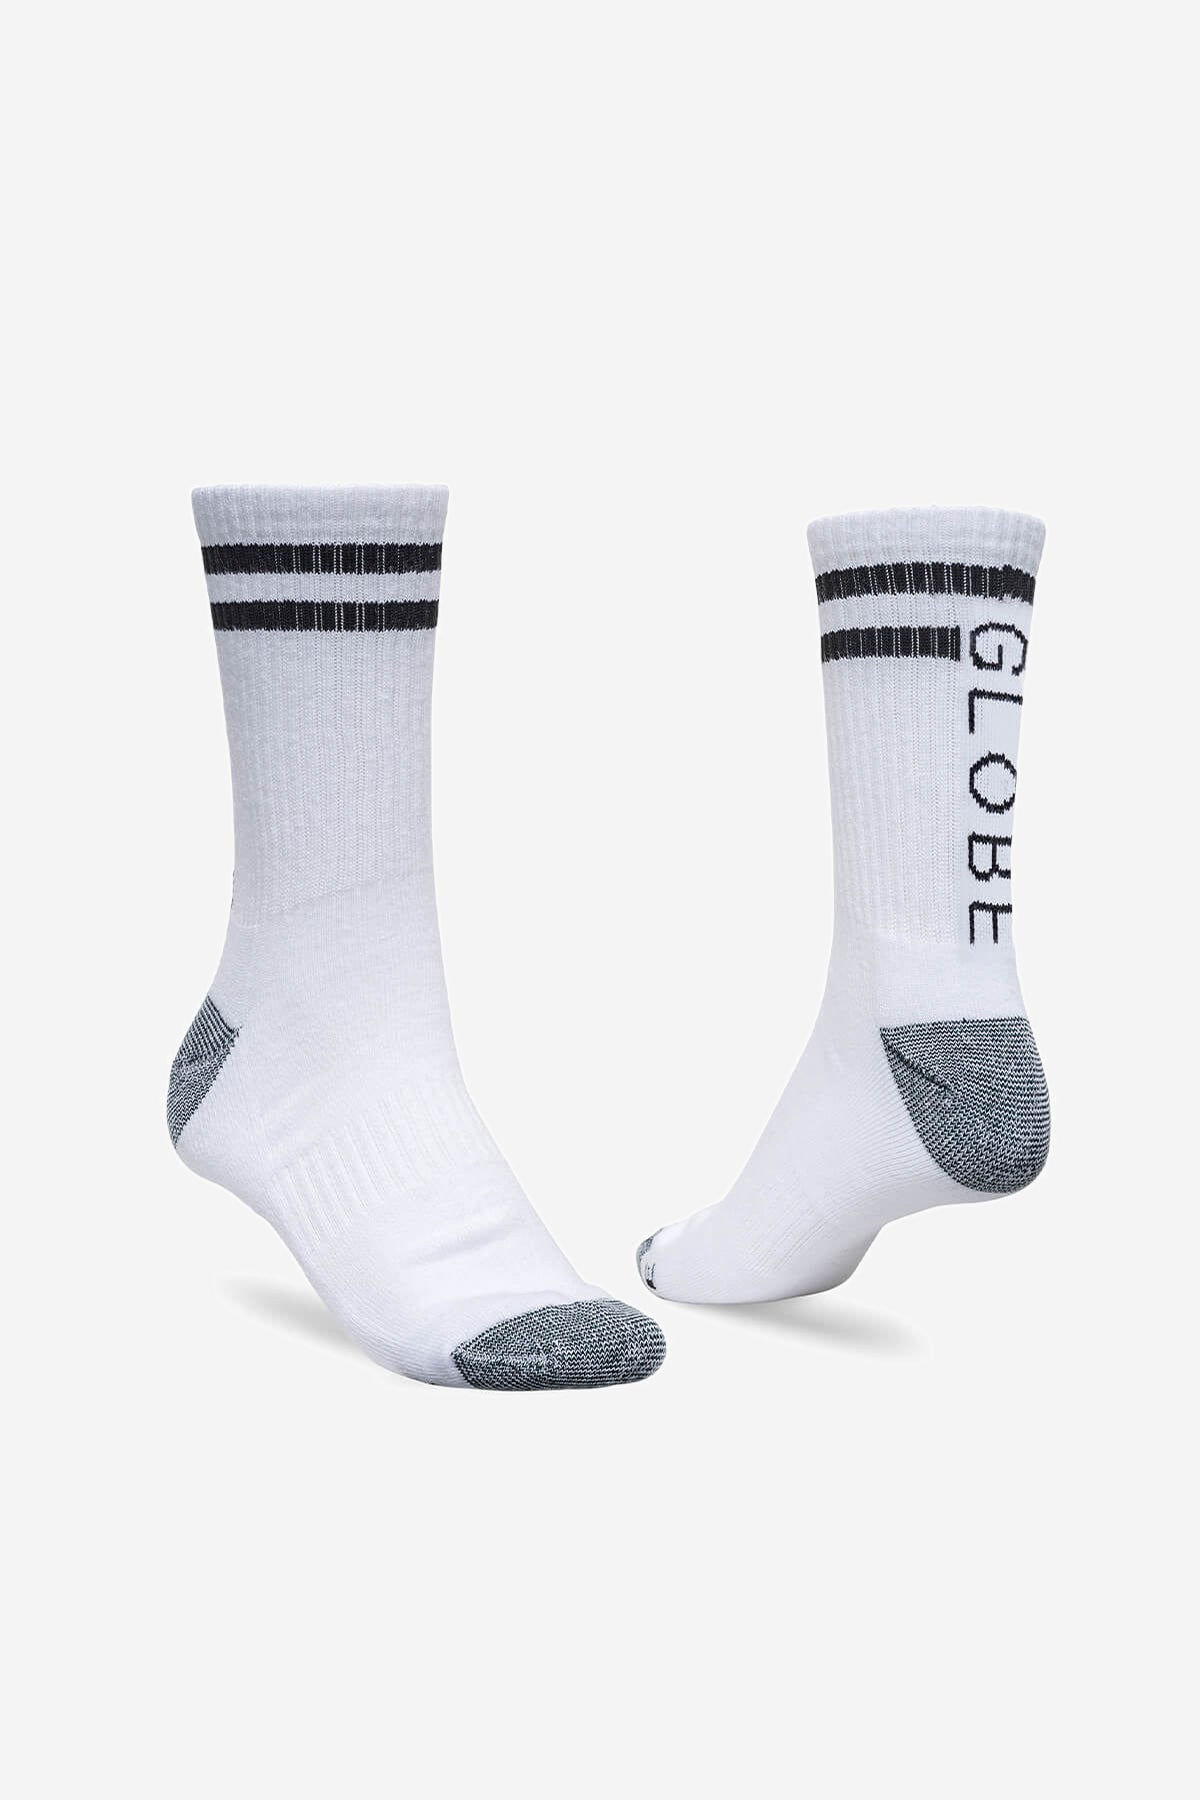 Globe - Carter Crew Sock 5 Pack - White